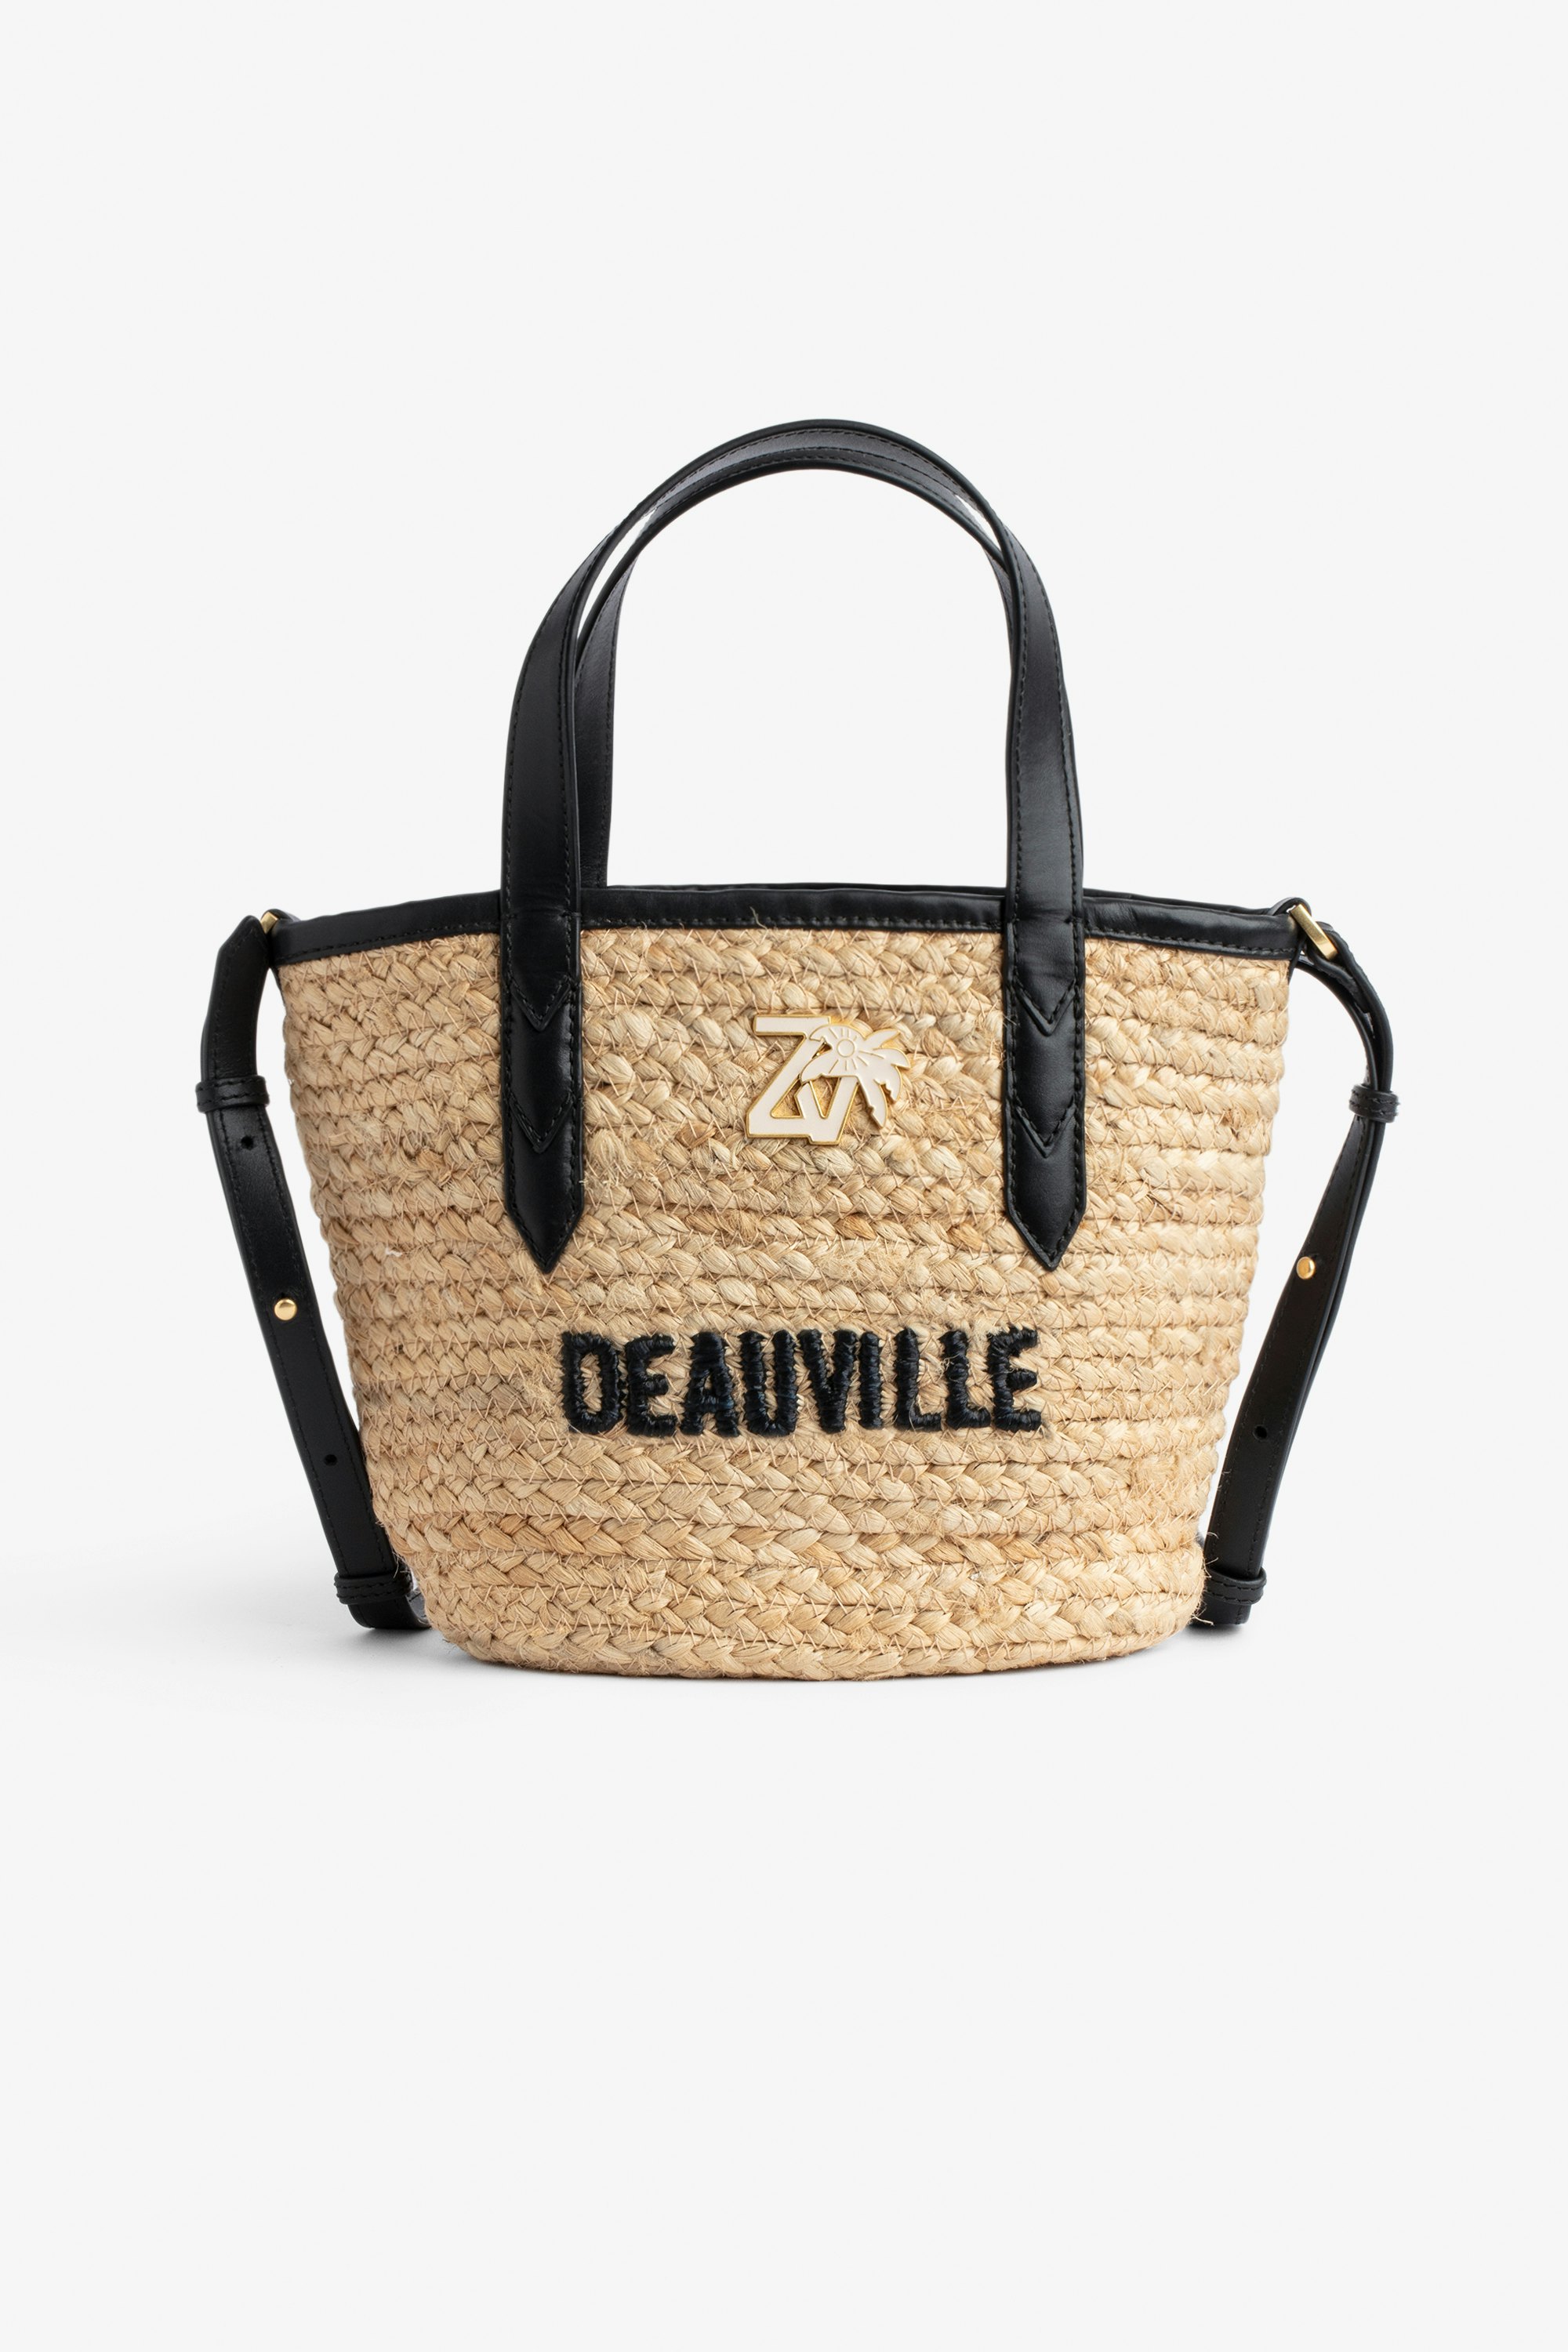 Sac Le Baby Beach Bag - Sac en paille à bandoulière en cuir noir, brodé "Deauville" et orné d'un charm ZV.